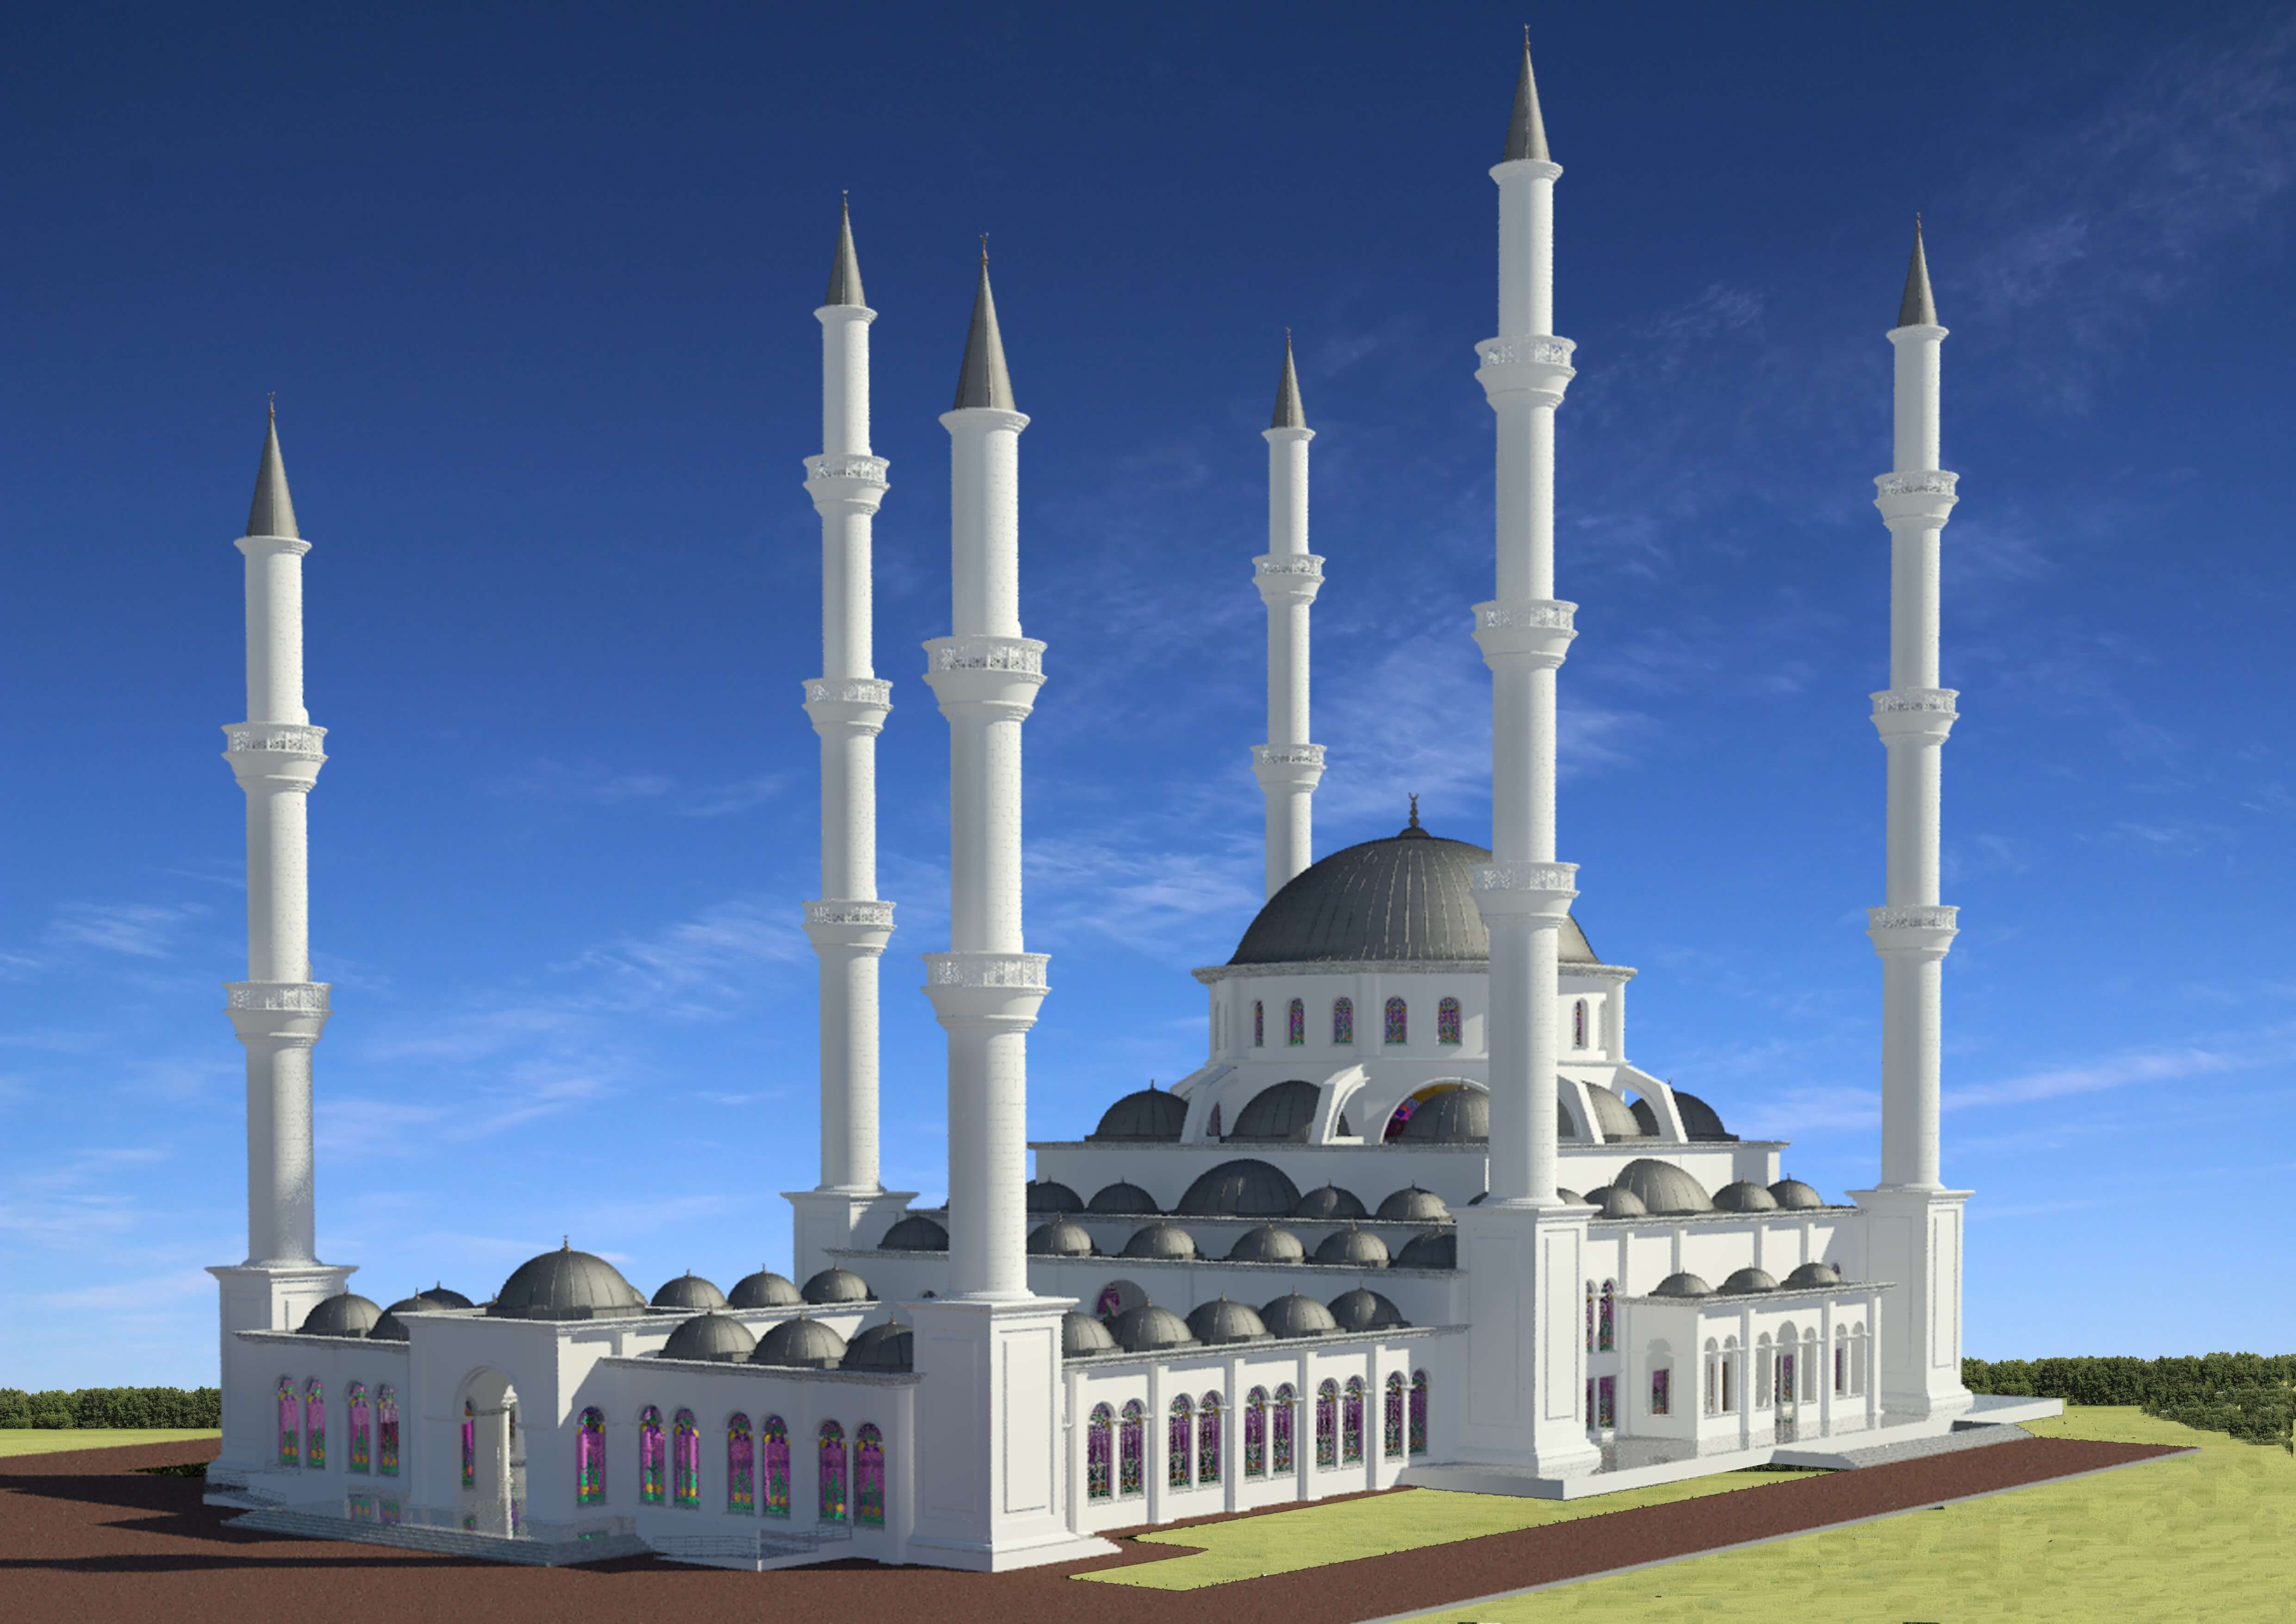 2020 Yılı 15 Kasımı’nda Bitmesi Programlanan Dr. Suat Günsel Camii’nin 62 Adet Kubbe ve 6 Minaresinde Kullanılacak Malzemenin Kıbrıs Türk Toplumu Tarafından Belirlenmesi İçin Anket Çalışması Yapılıyor…